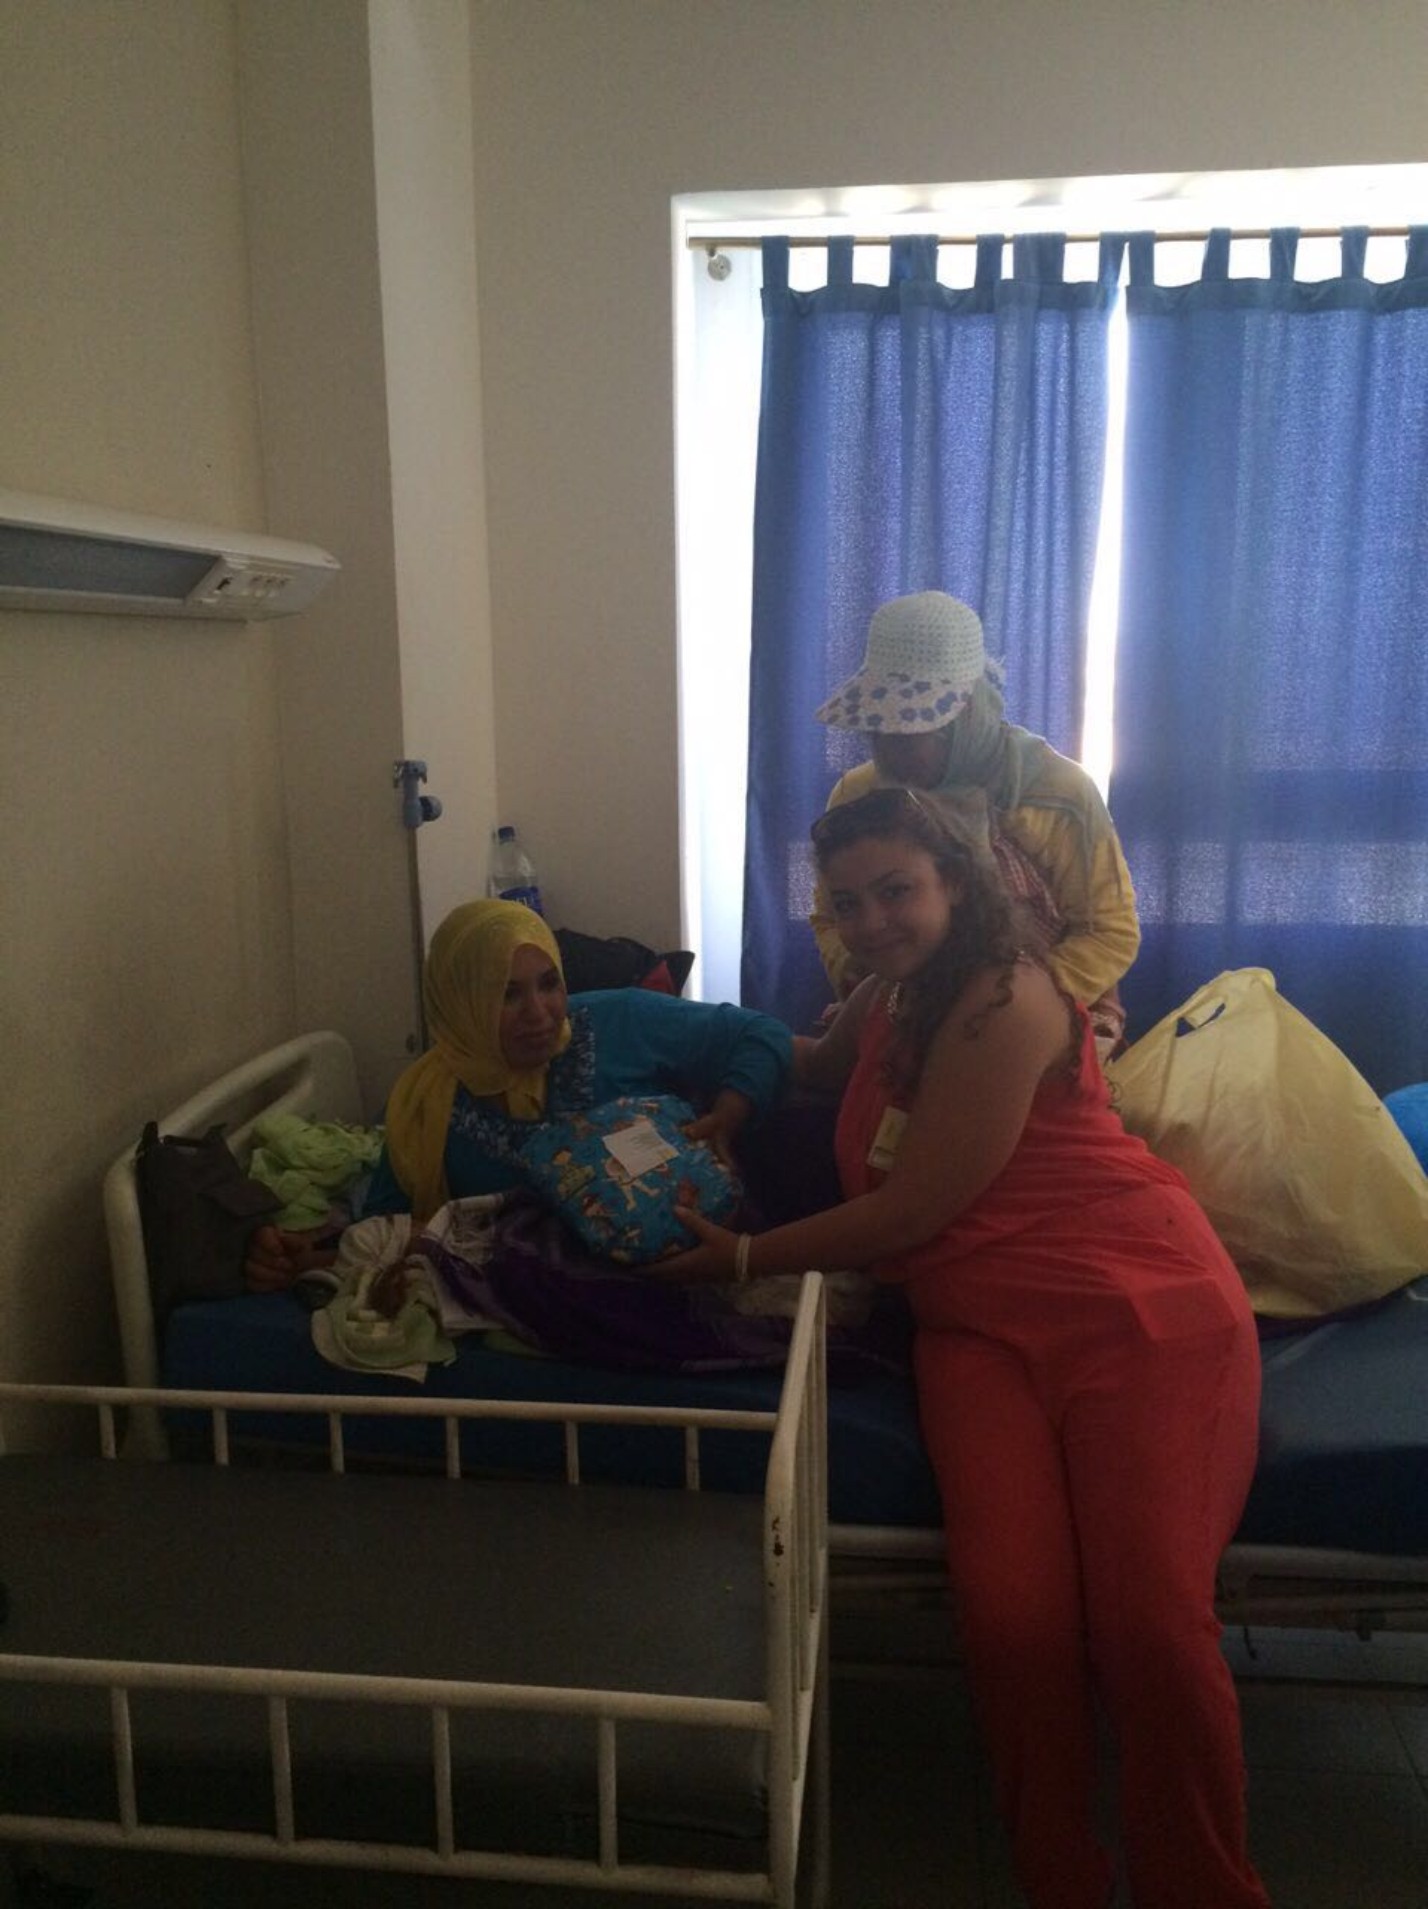 Babybekleidung für Neugeborene im Krankenhaus von Aljadida